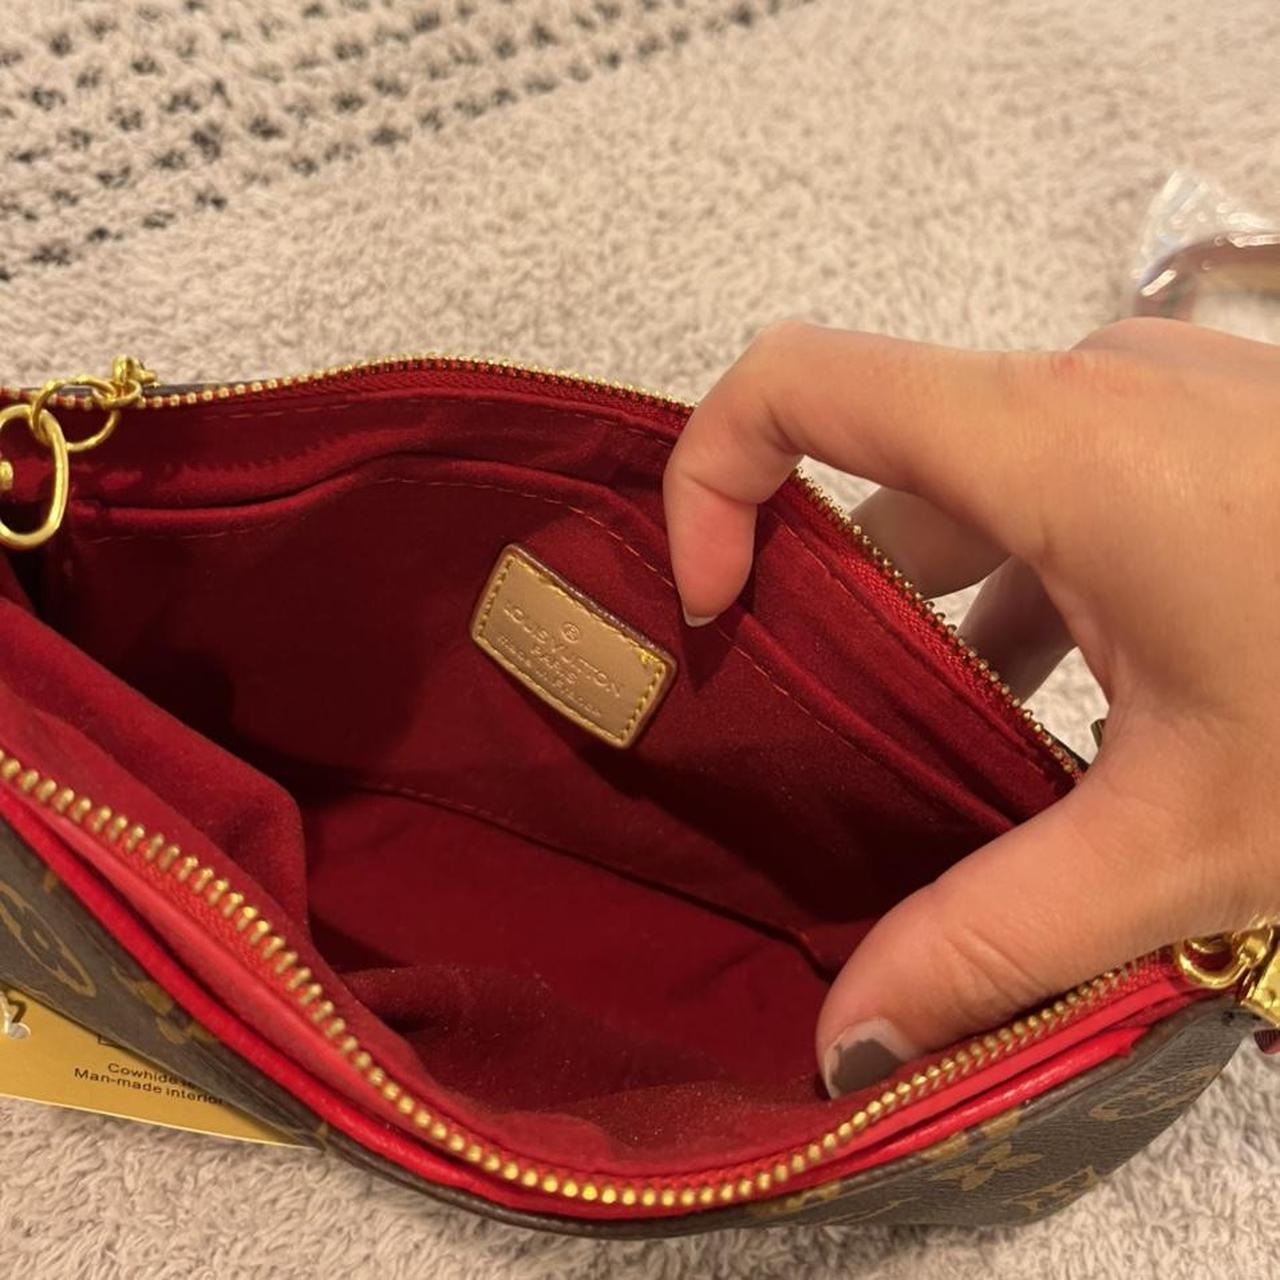 Louis Vuitton wallet with coin wallet insert Slight - Depop